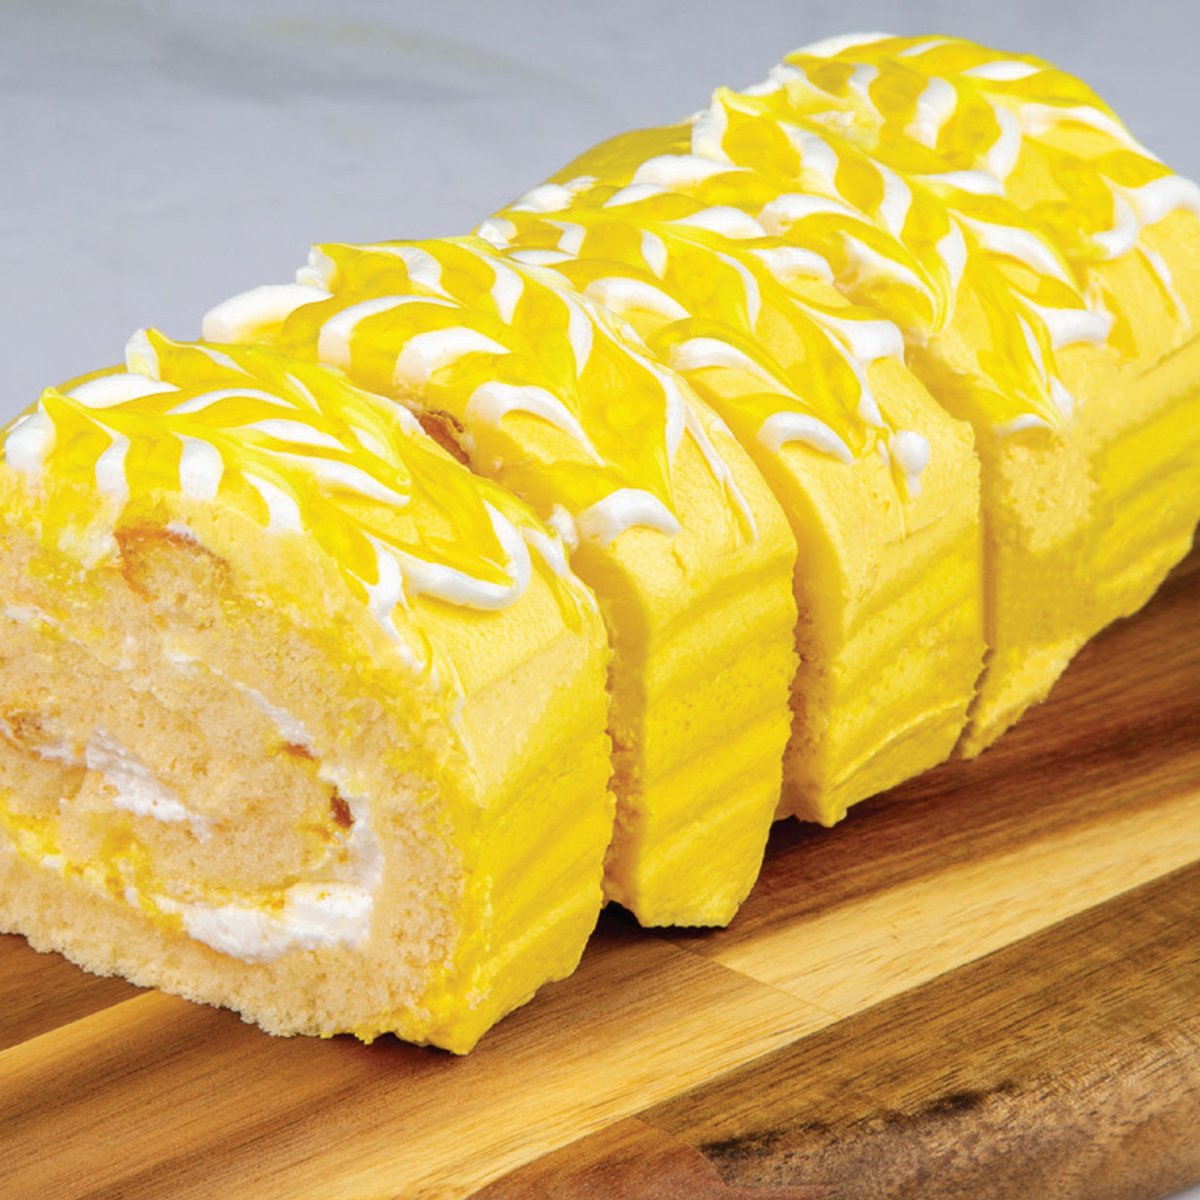 LuLu Bakery Pineapple Swiss Roll 1 pkt